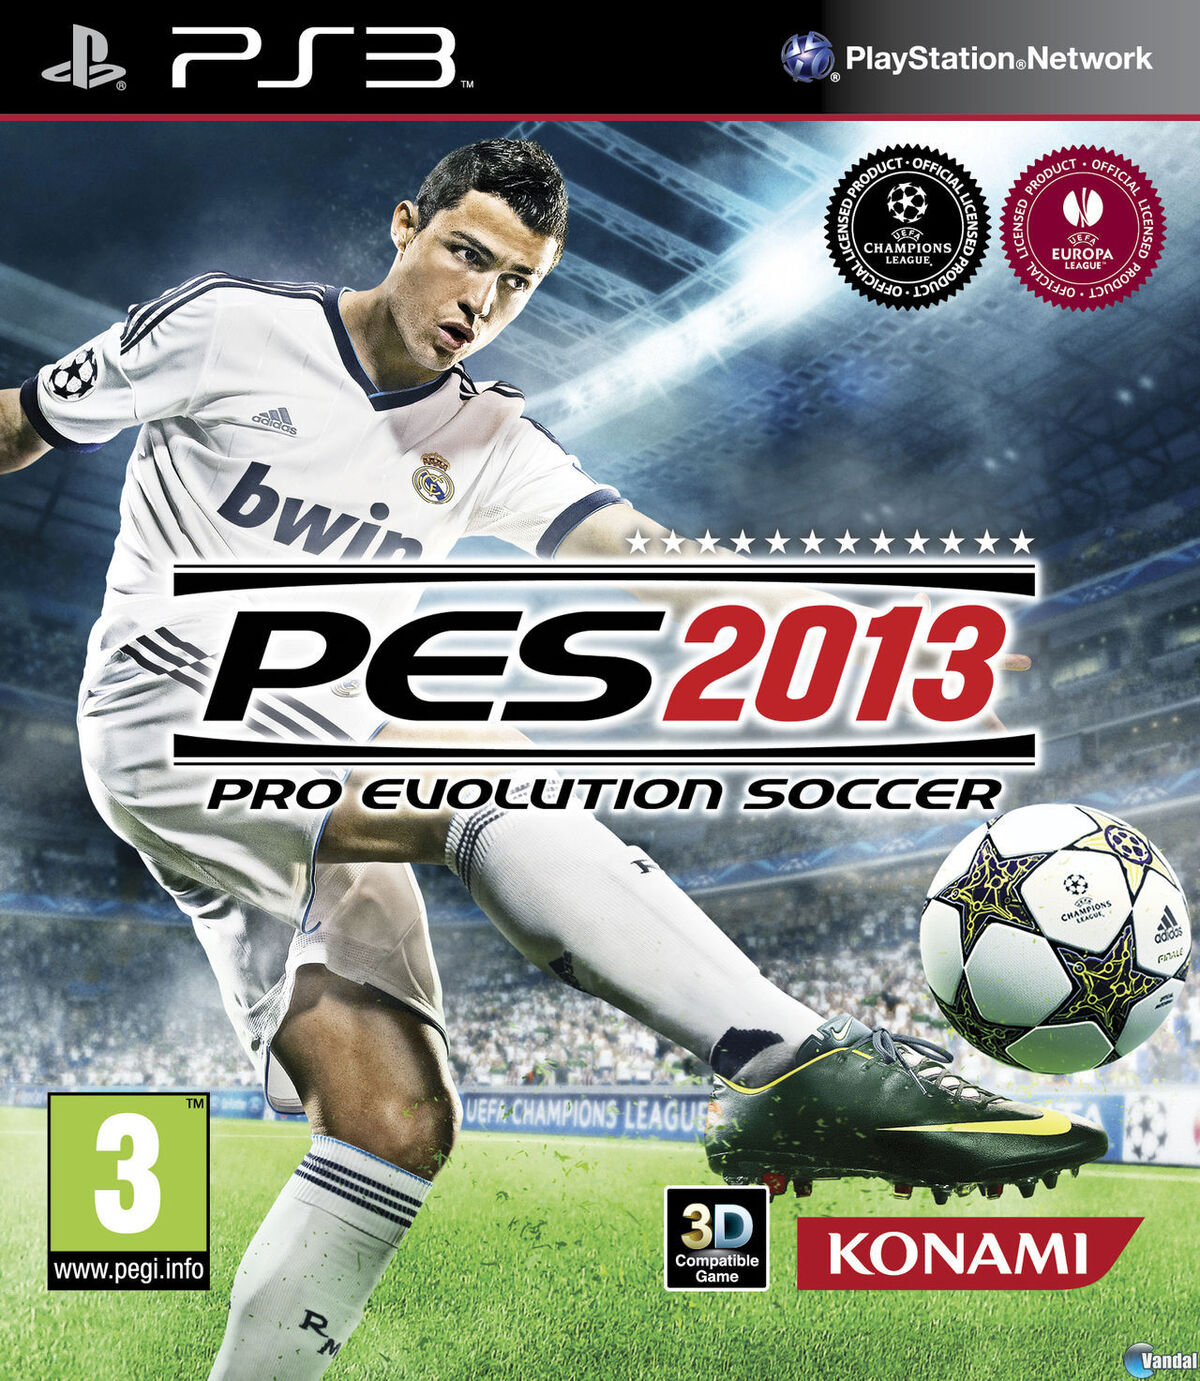 Pro Evolution Soccer 2013 | Wiki Pro Evolution Soccer |